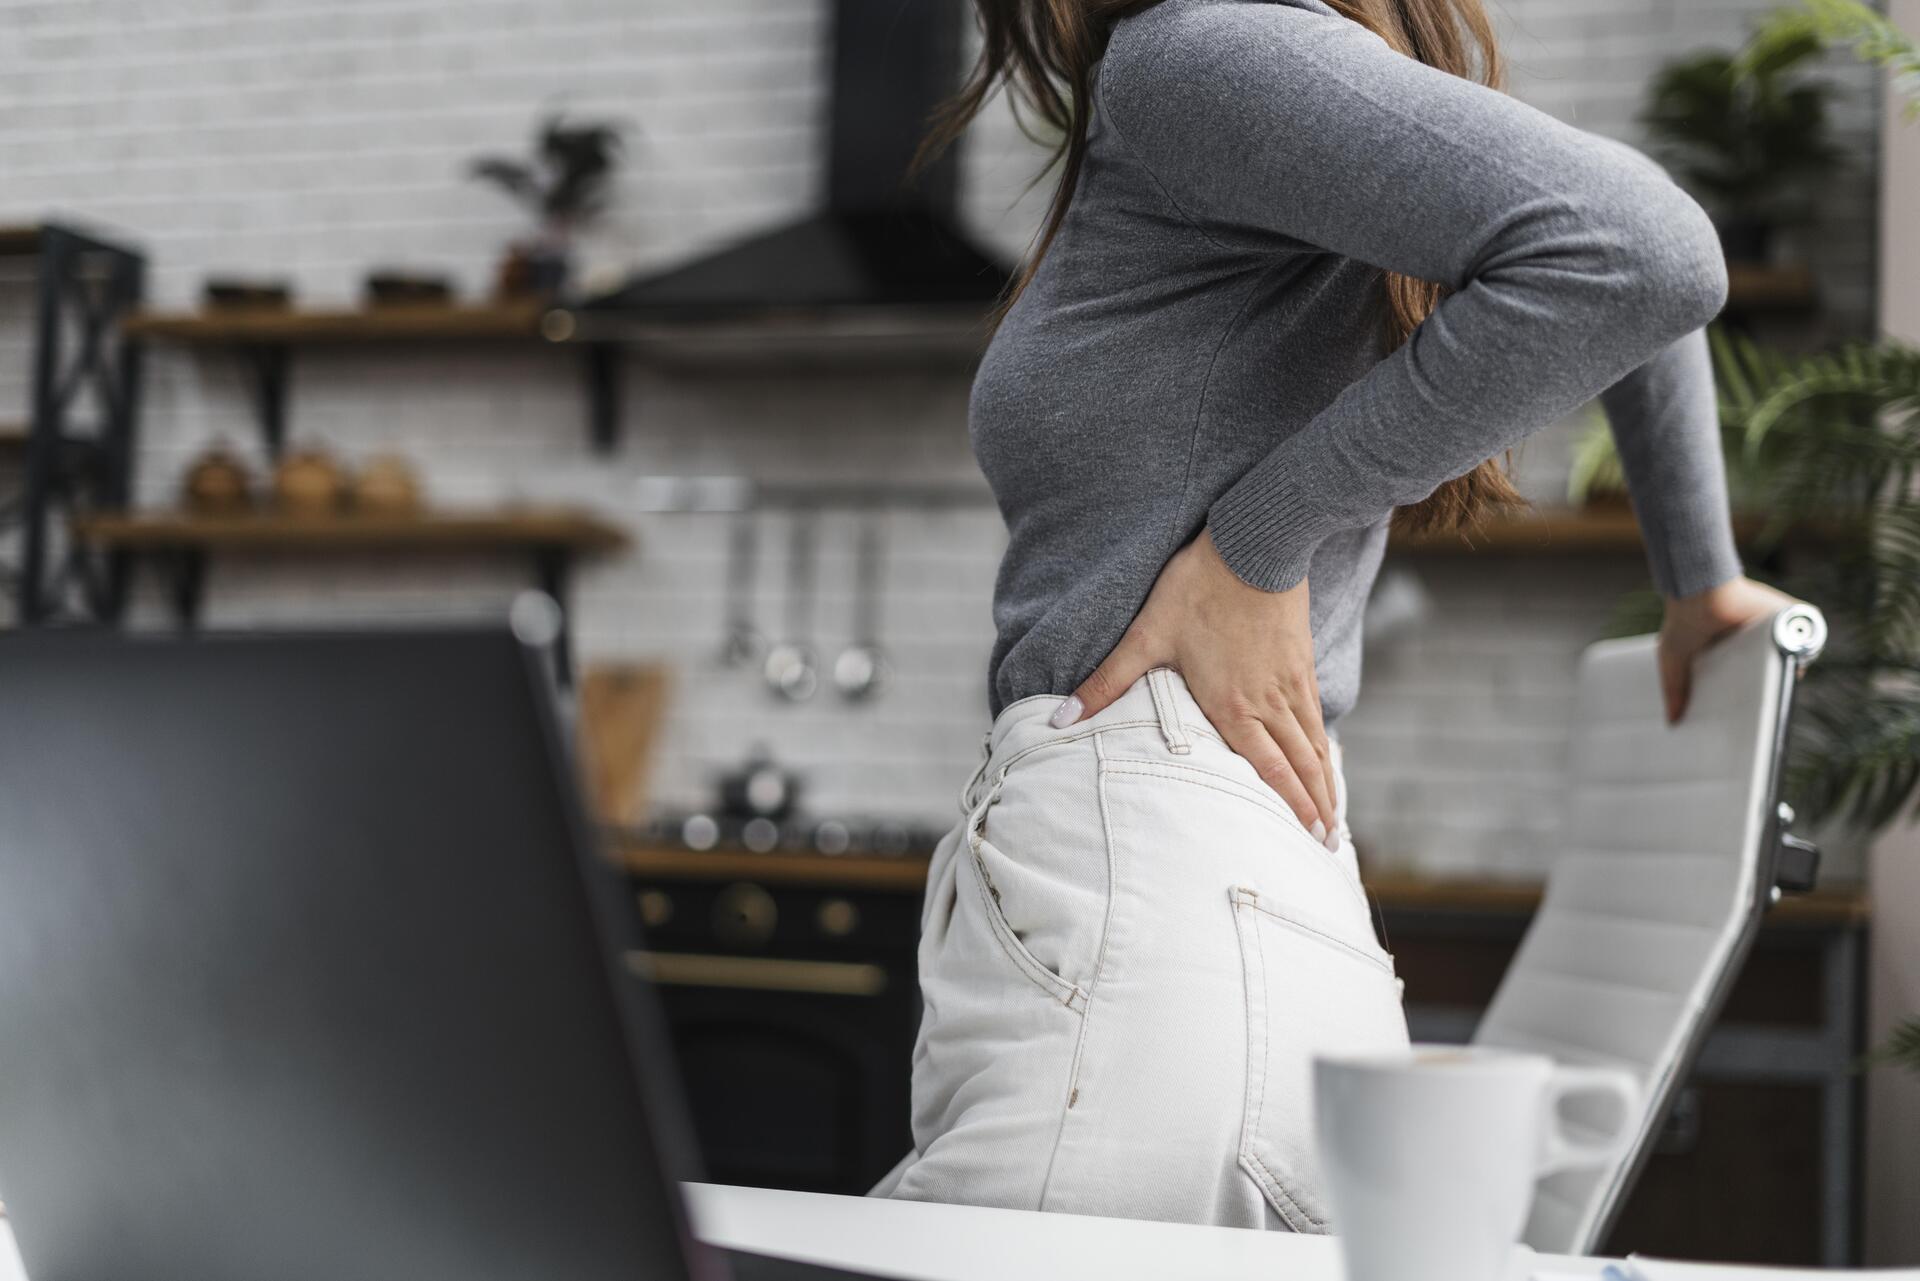 Терапевт Бурнацкая: при боли в спине можно нащупать конкретную болевую точку